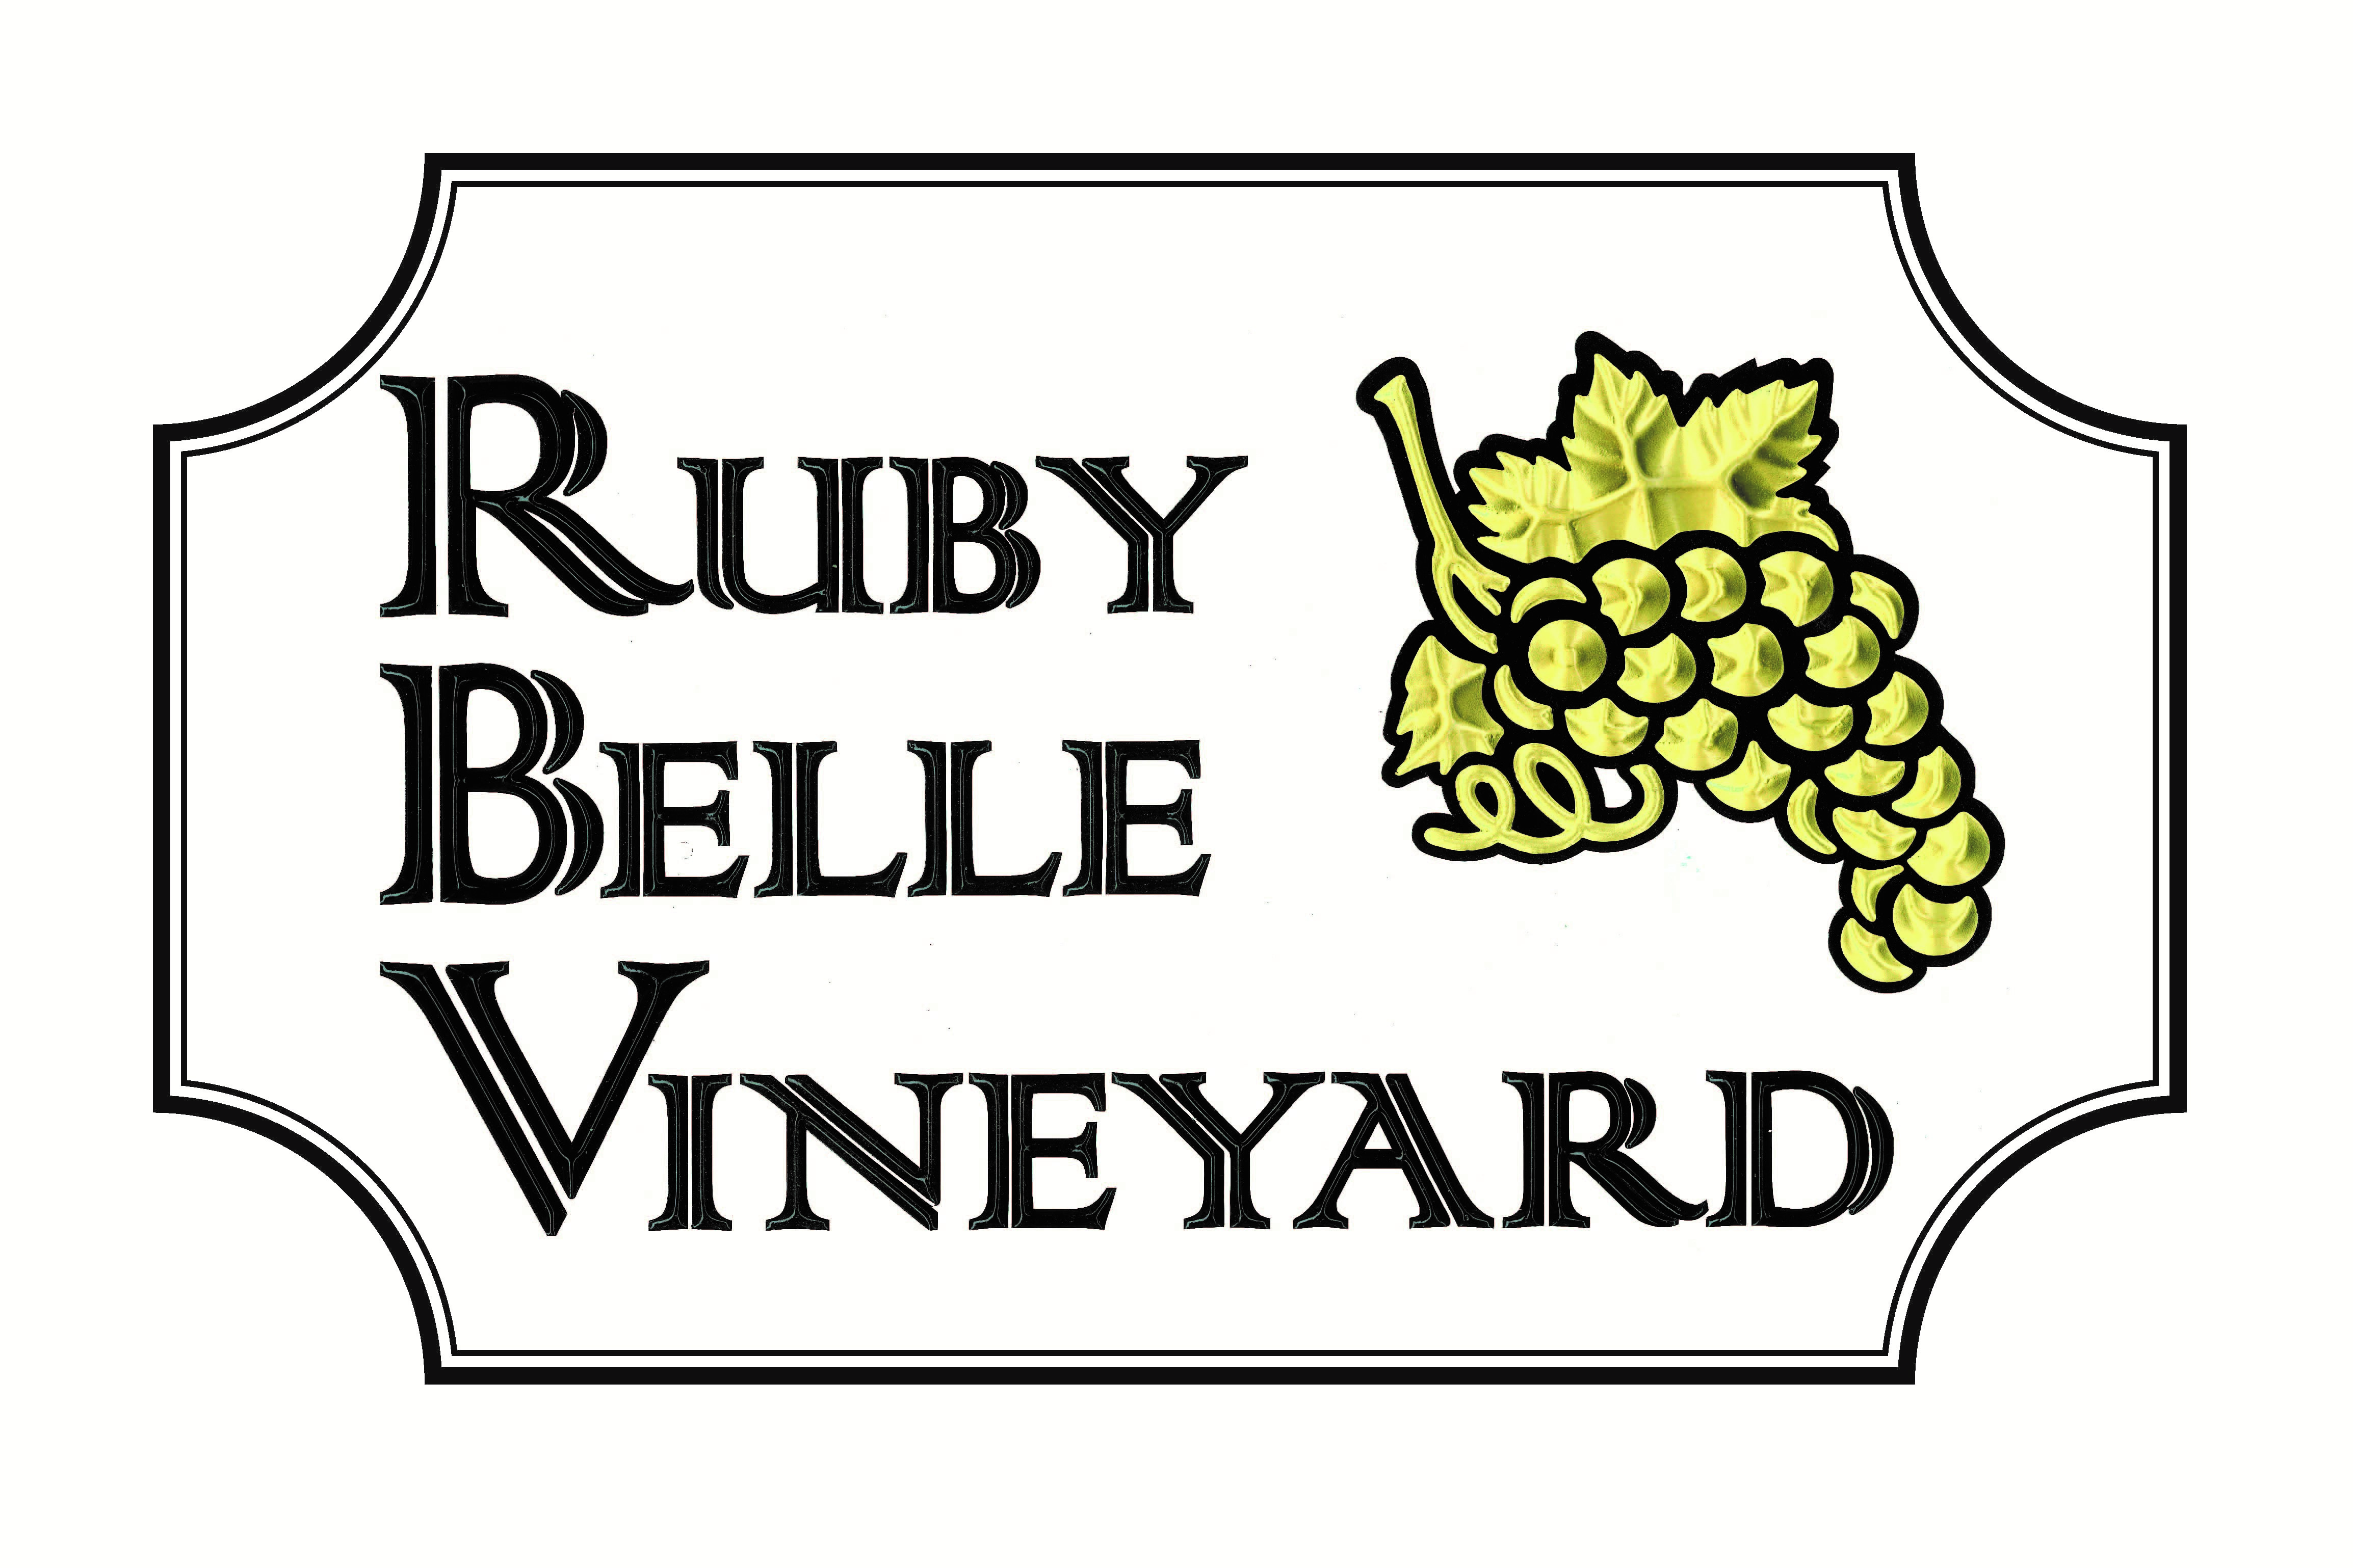 Ruby Belle Vineyards